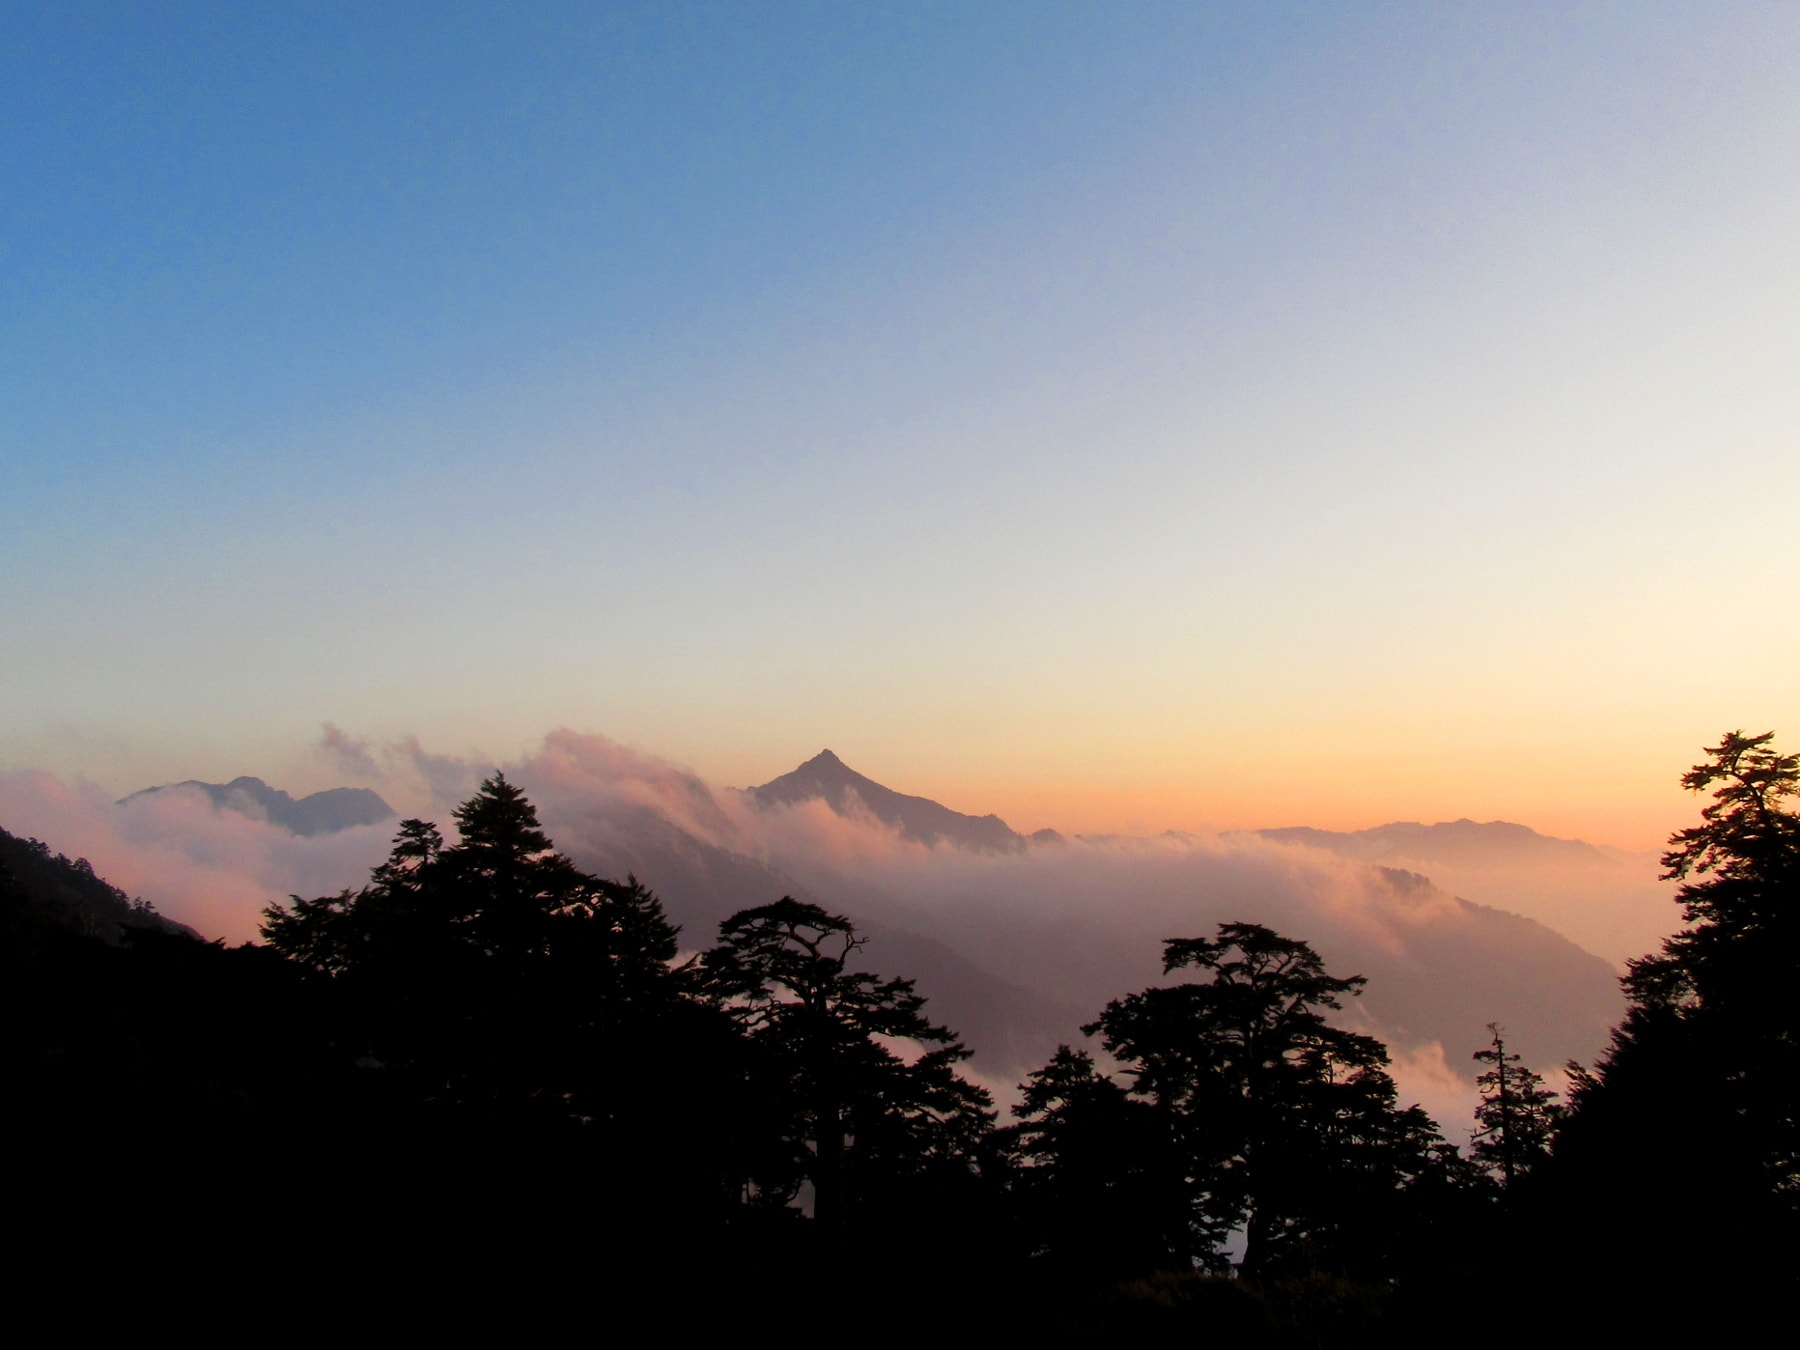 Mt. Nengao in Taiwan